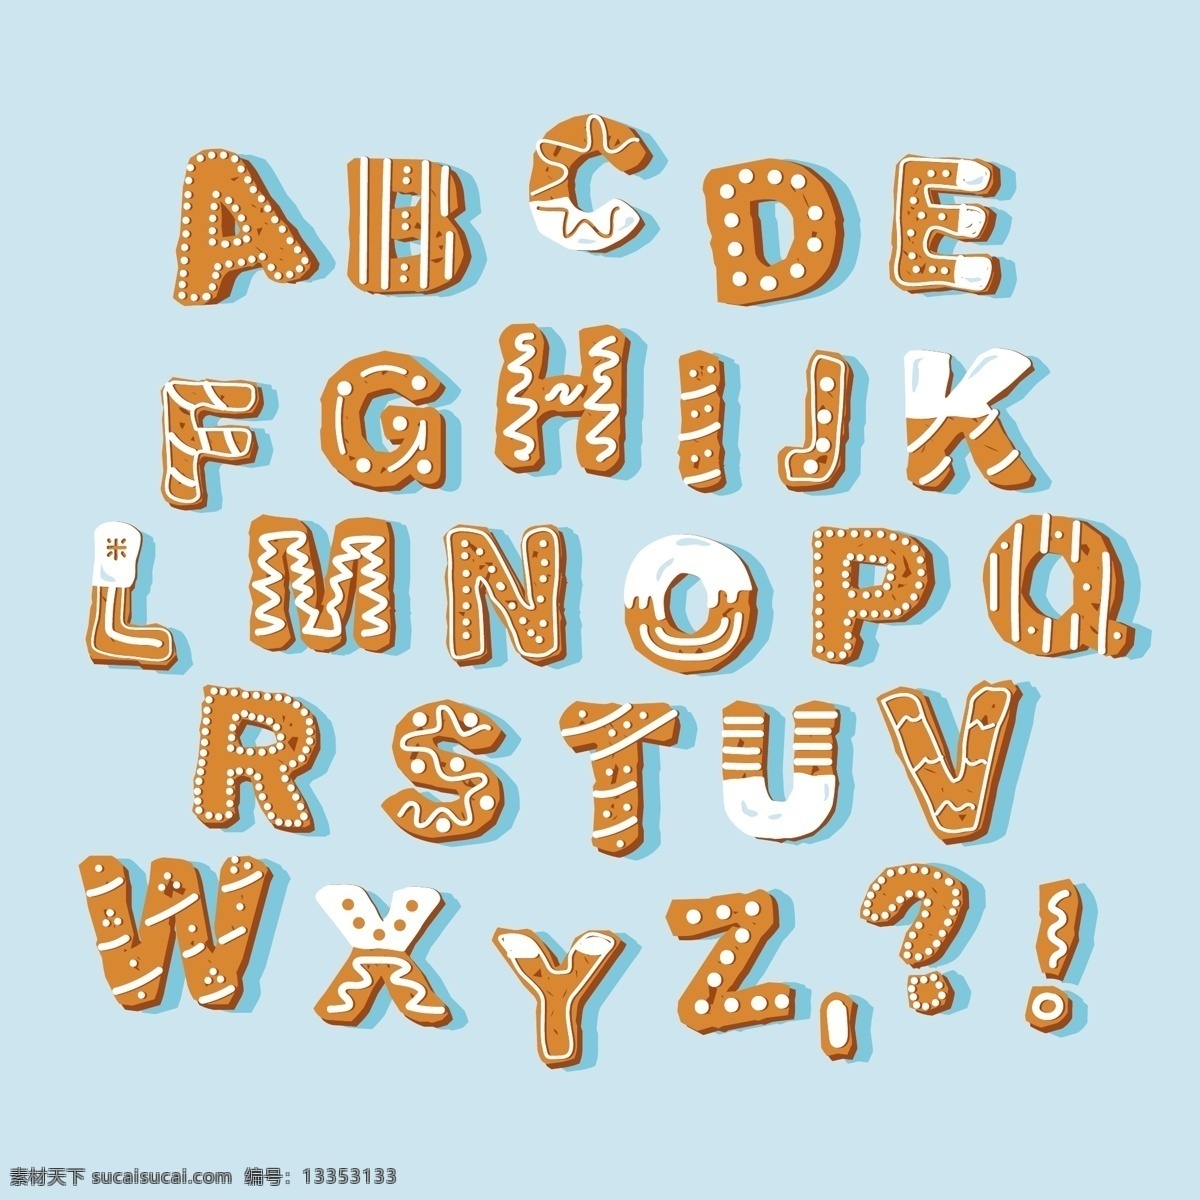 饼干字母 圣诞节字母 矢量字母 卡通字母 手绘字母 字母插画 创意字母 艺术字母 立体字母 3d字母 食品字母 曲奇字母 食物字母 甜点字母 甜品字母 大写字母 儿童字母 活泼字母 趣味字母 数字字母 标志图标 其他图标